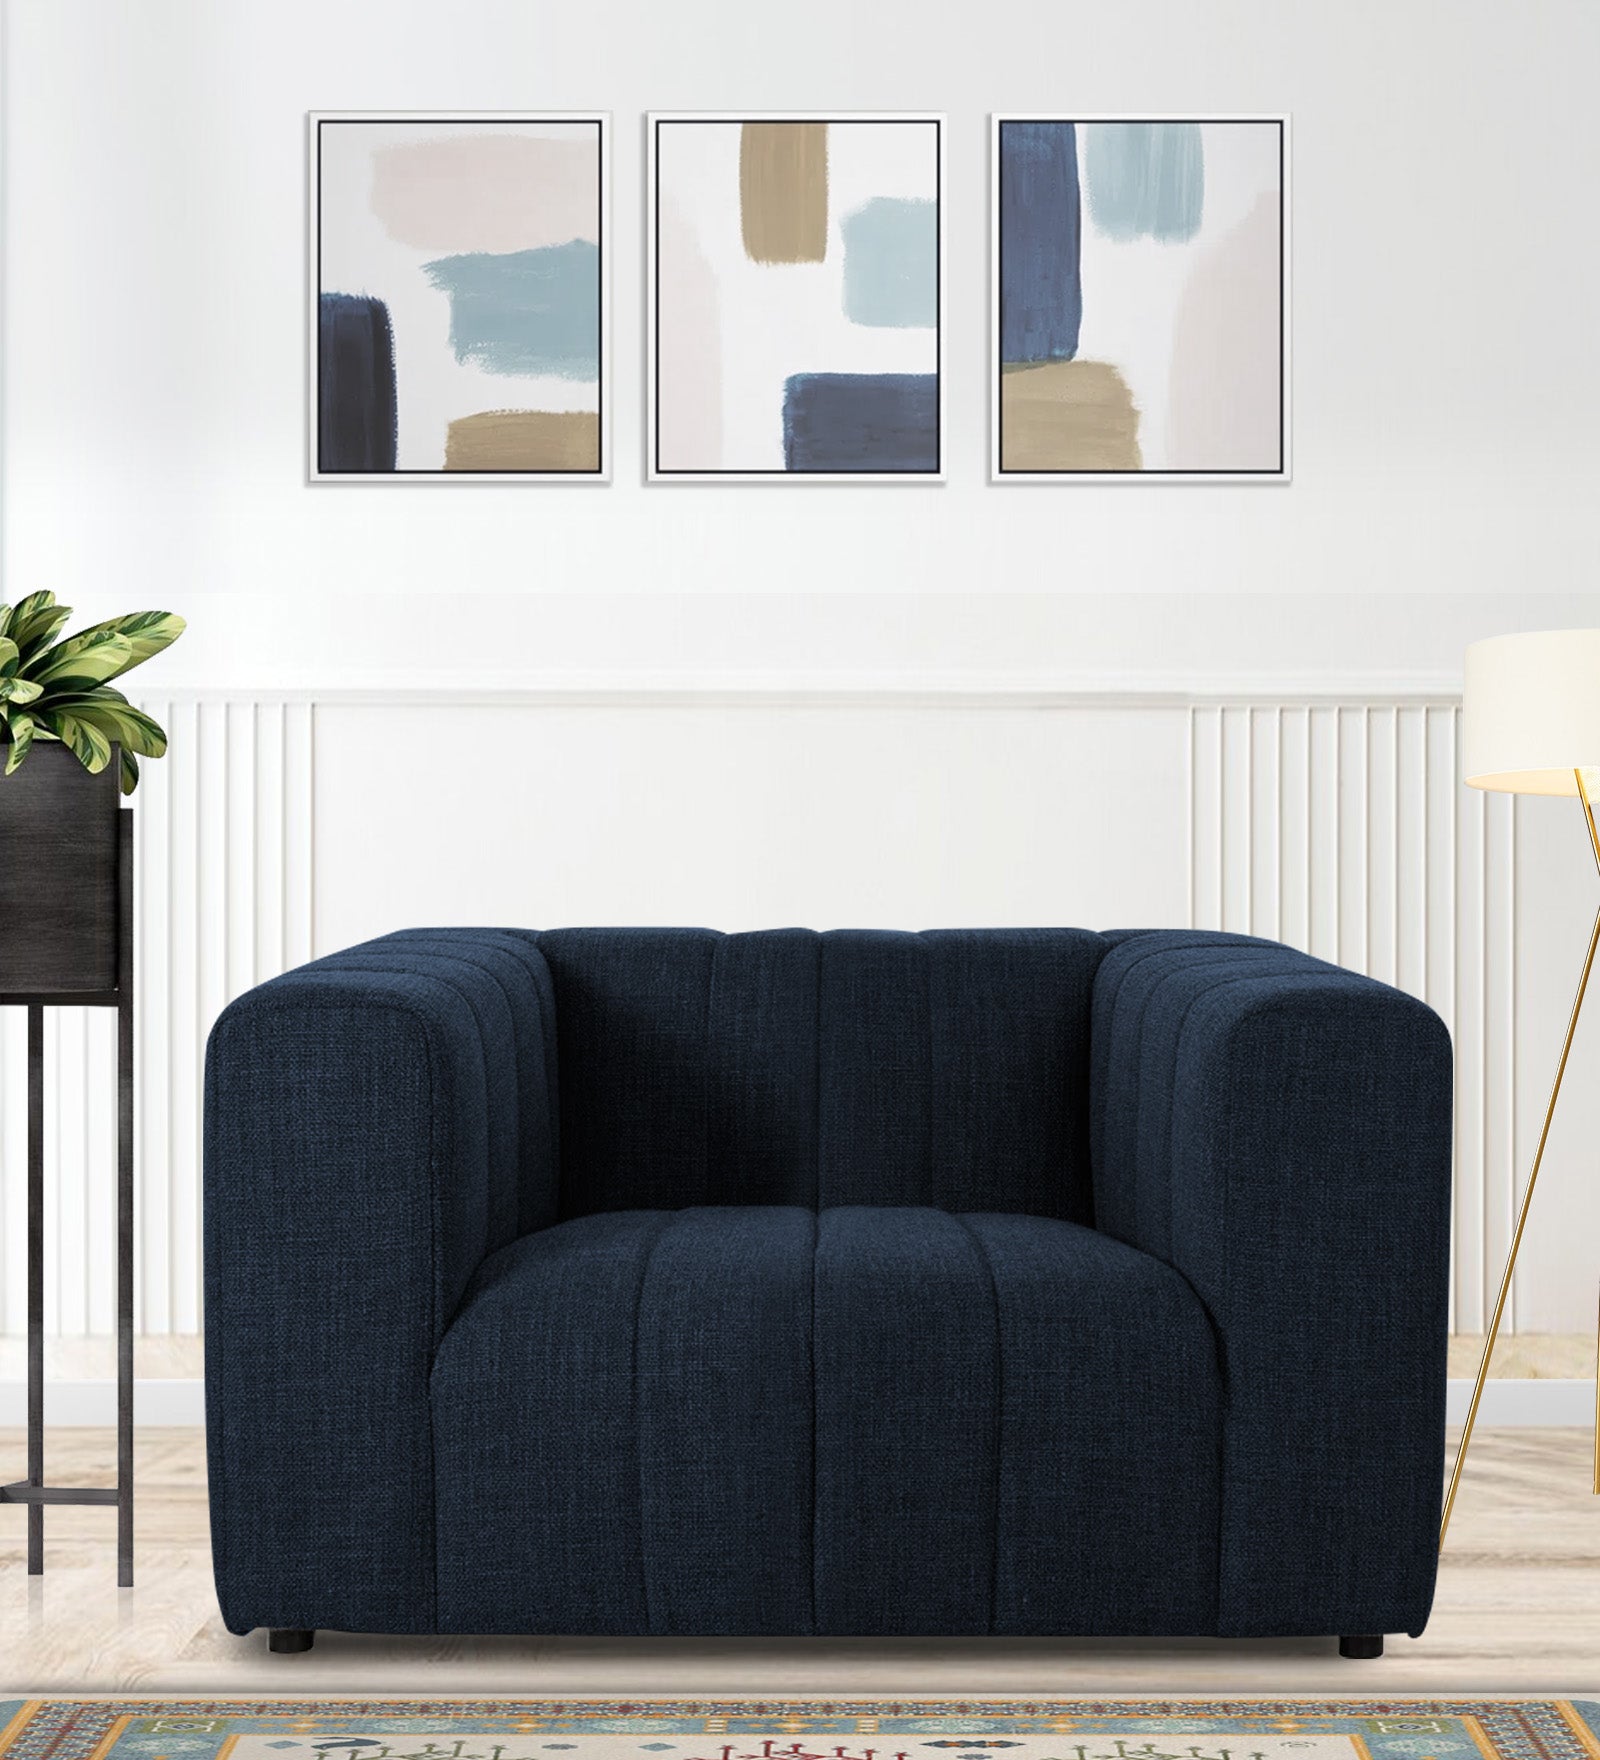 Lara Fabric 1 Seater Sofa in Denim Blue Colour